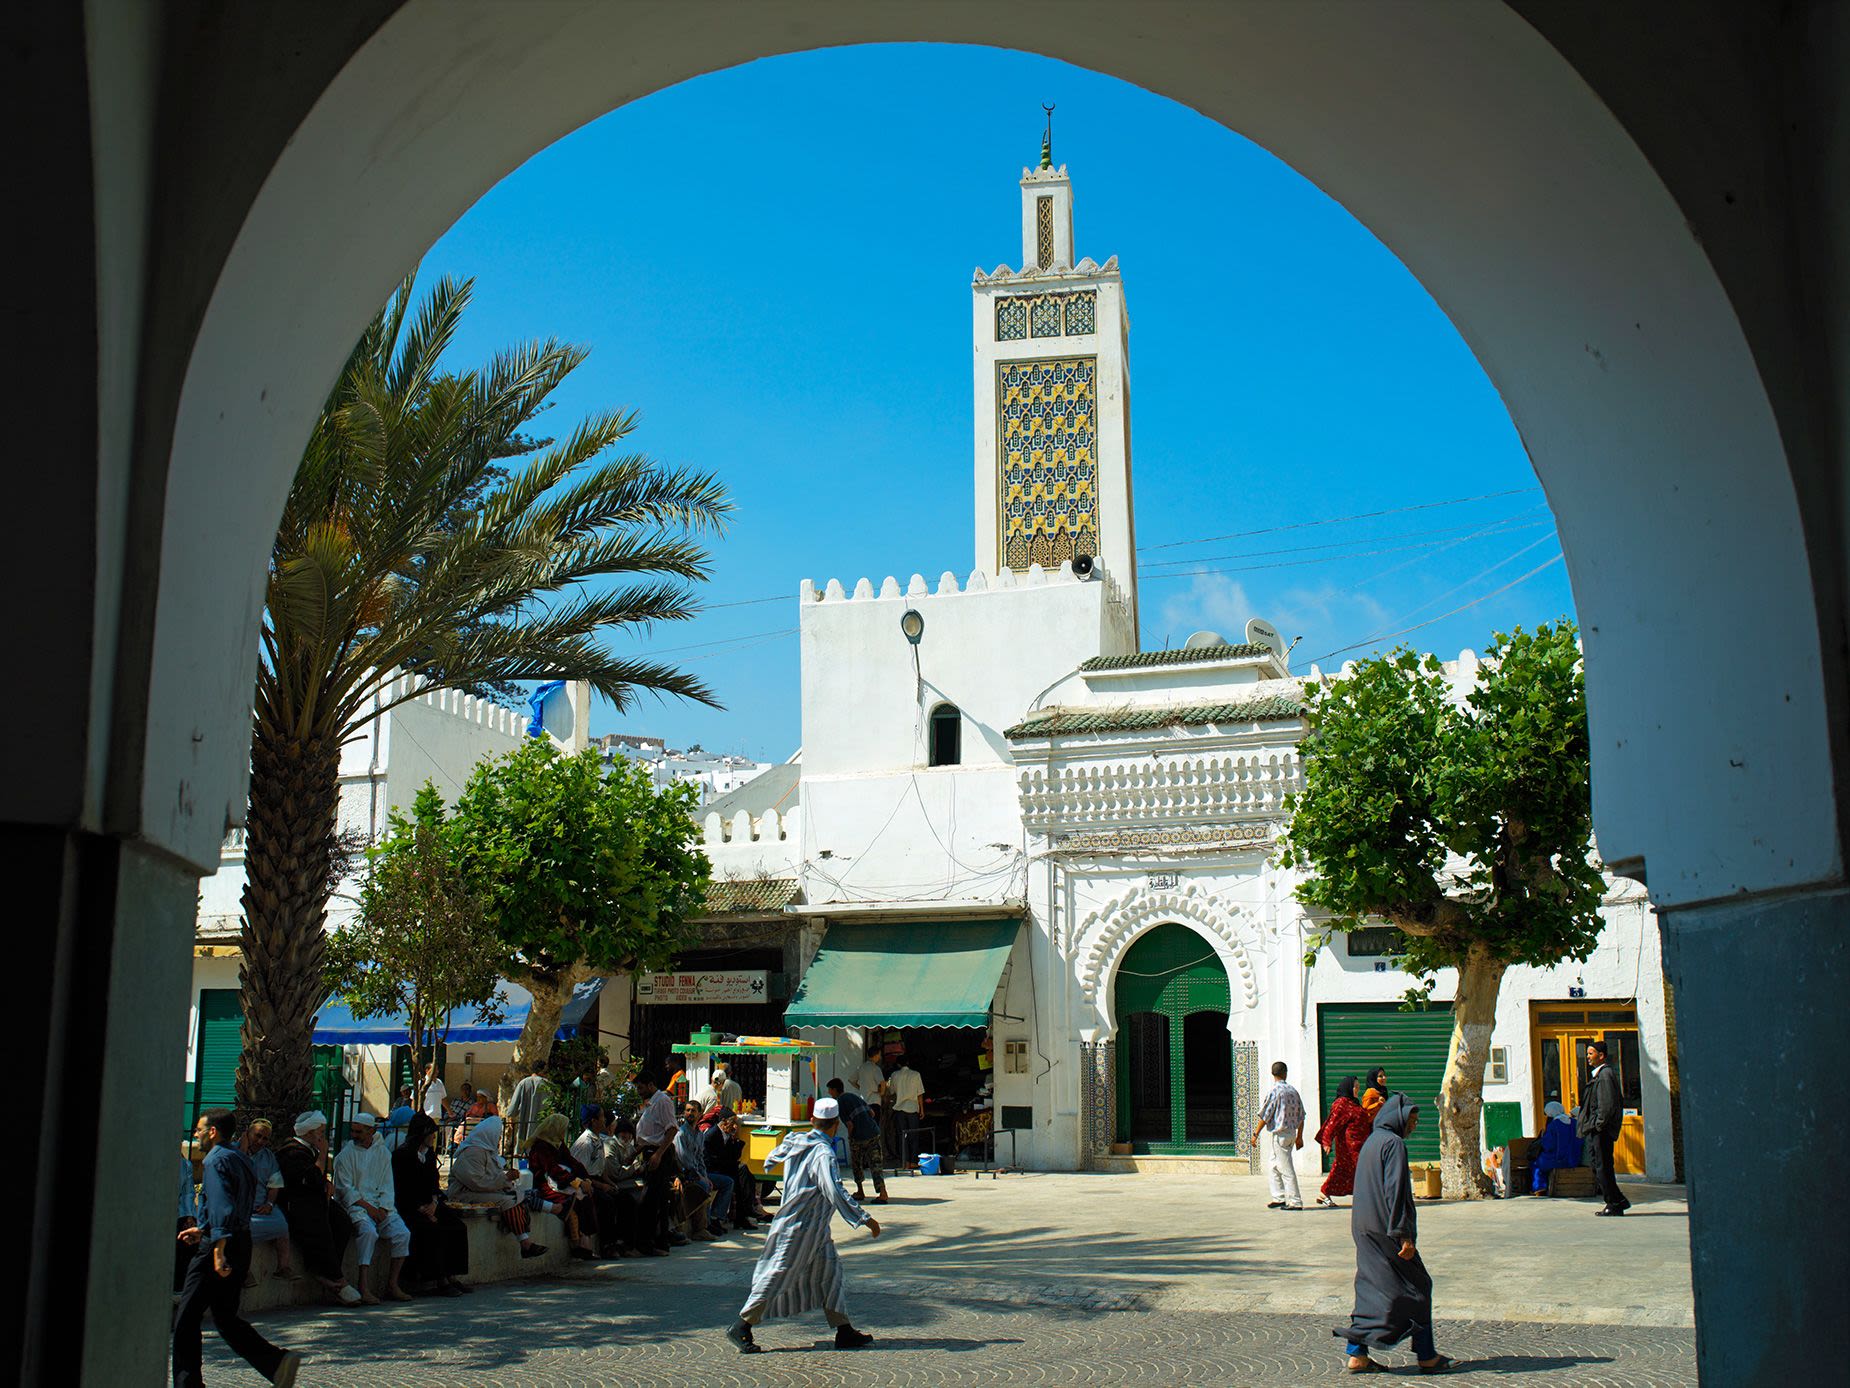 AD25N4 Public square in Tetouan Morocco